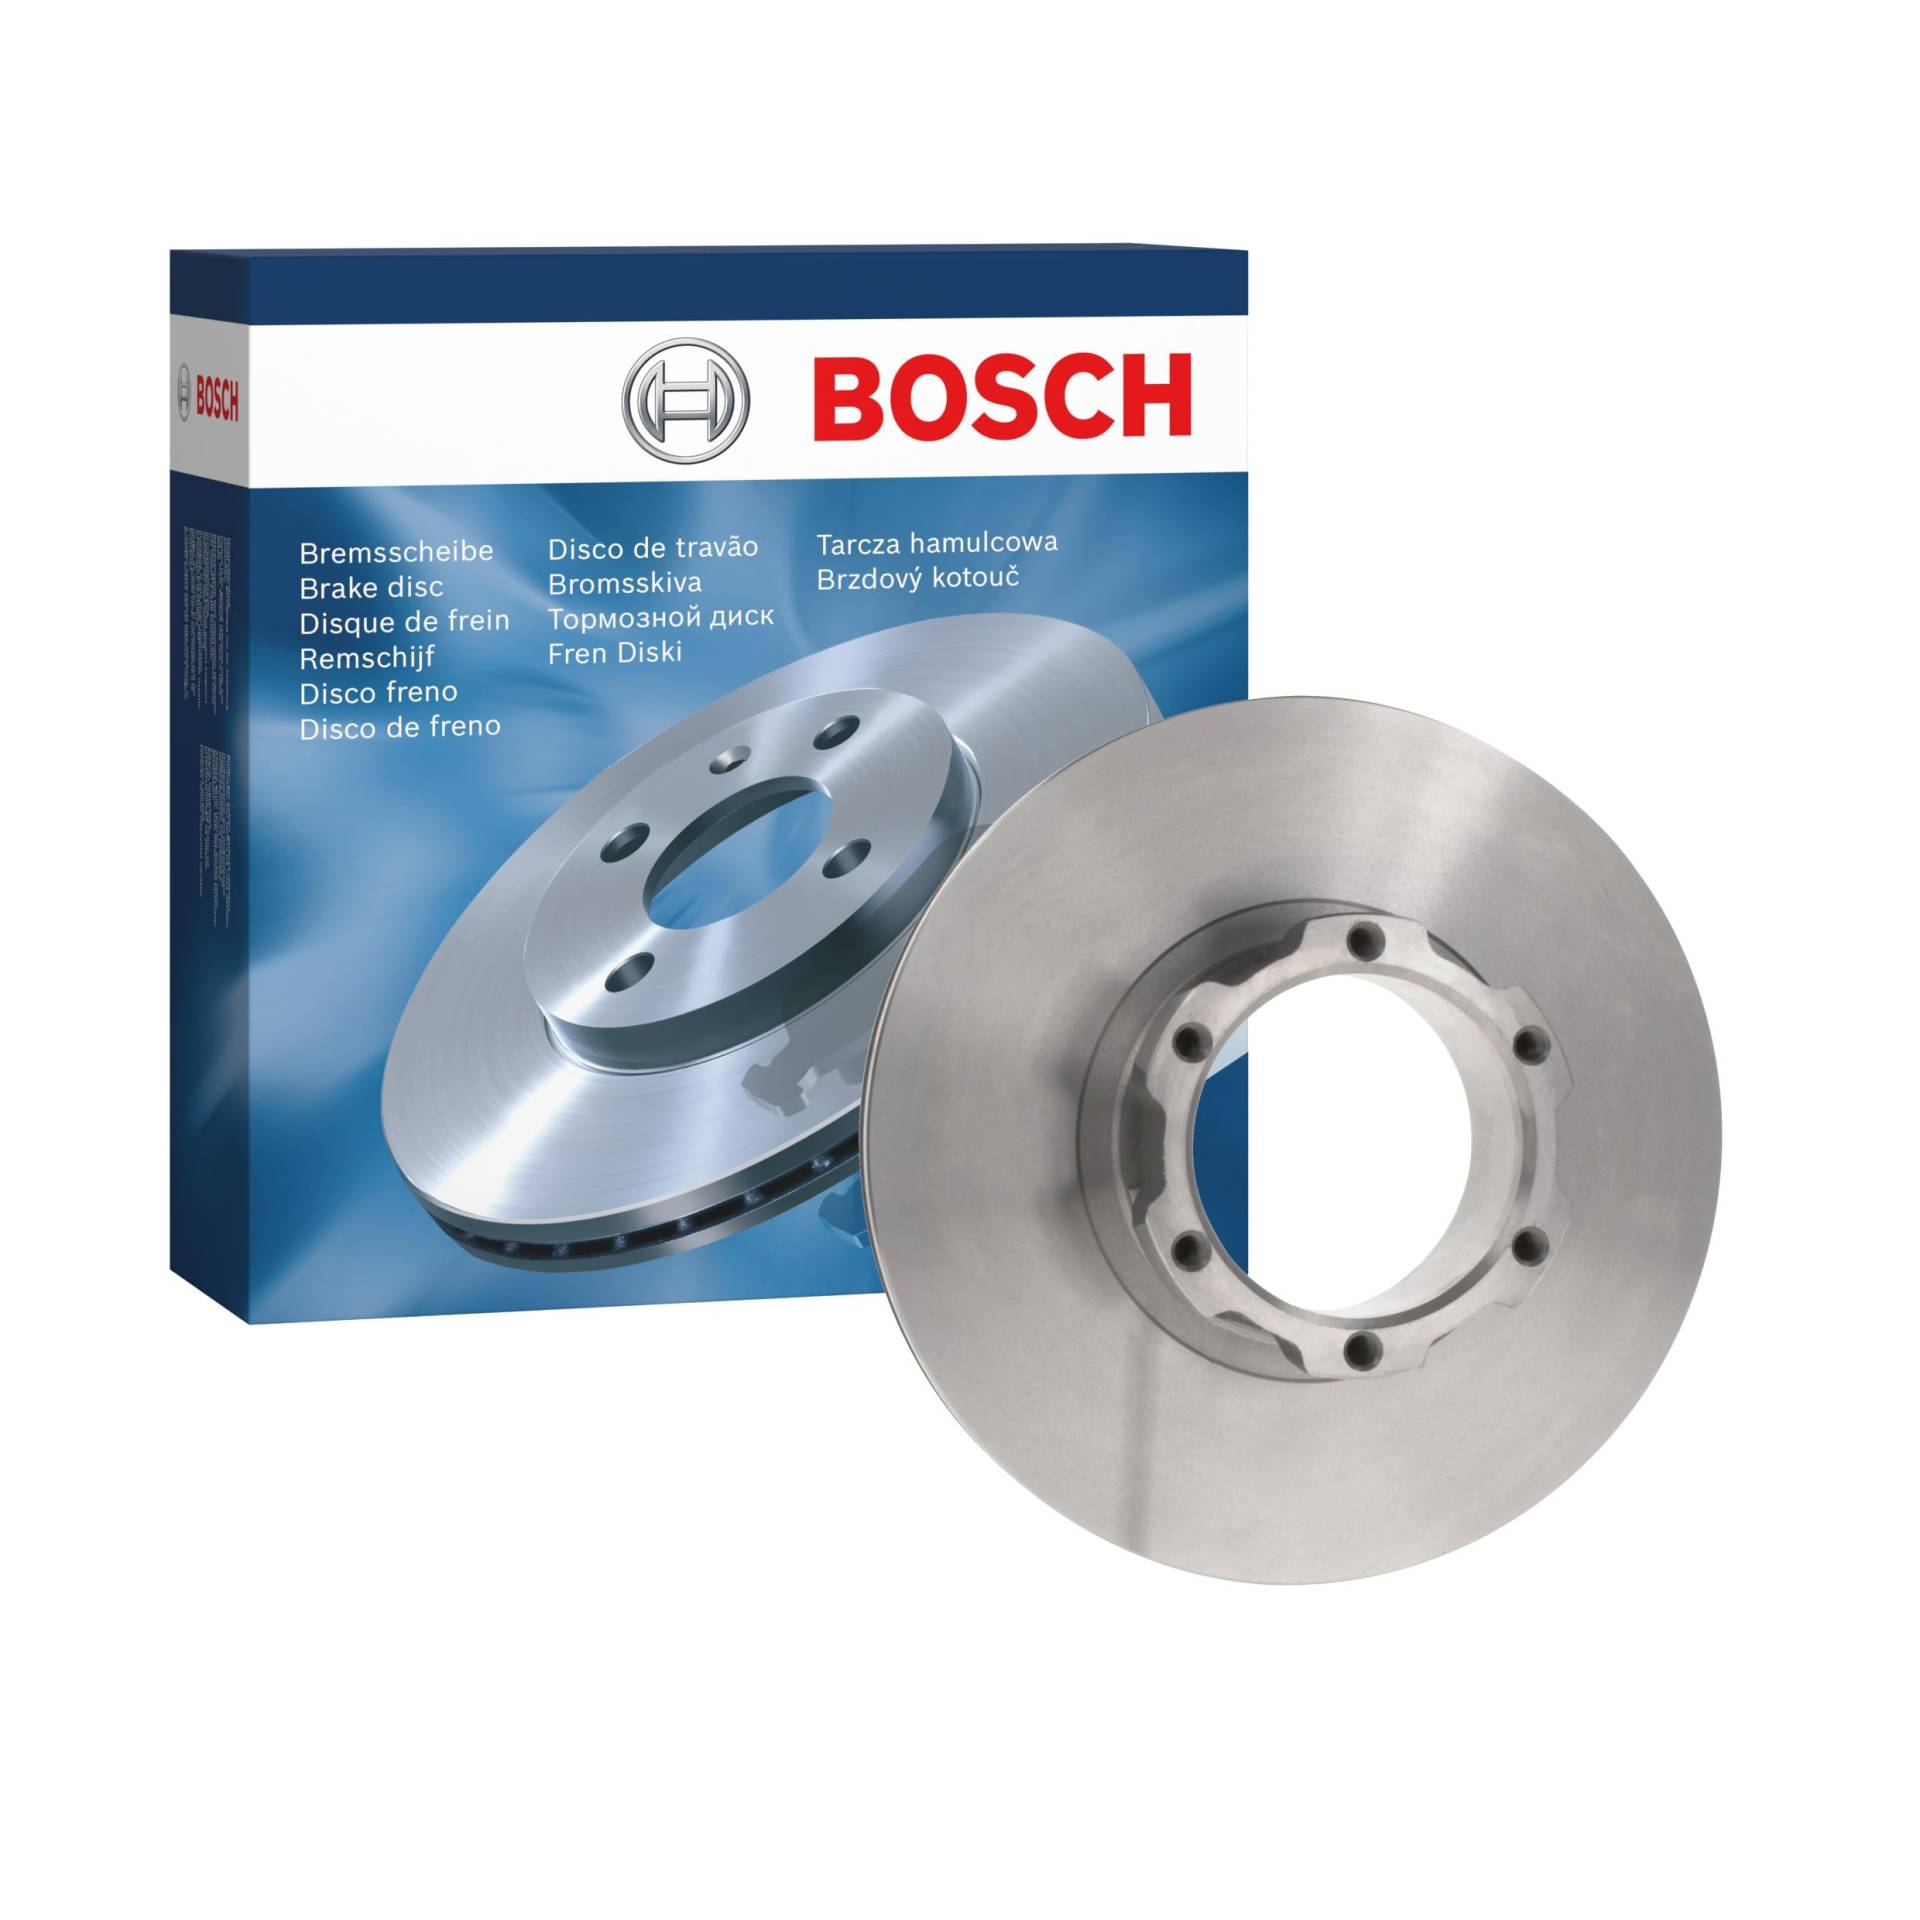 Bosch BD338 Bremsscheiben - Vorderachse - eine Bremsscheibe von Bosch Automotive